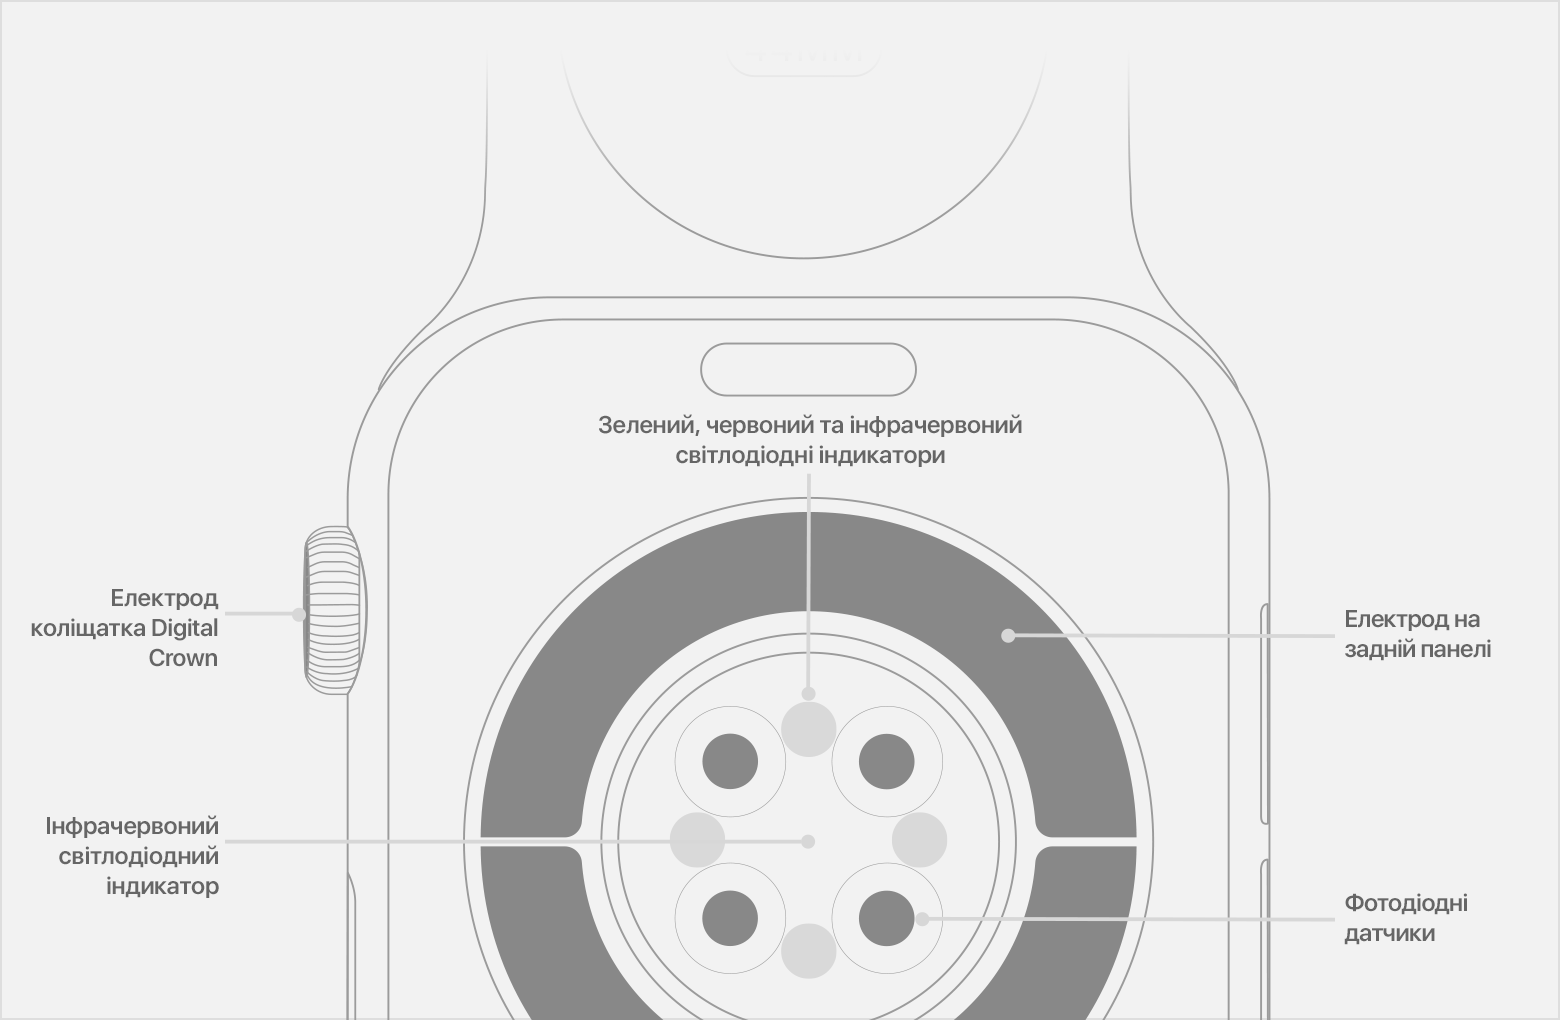 Розташування фотодіодних датчиків, інфрачервоних і зелених світлодіодів на Apple Watch Series 6.